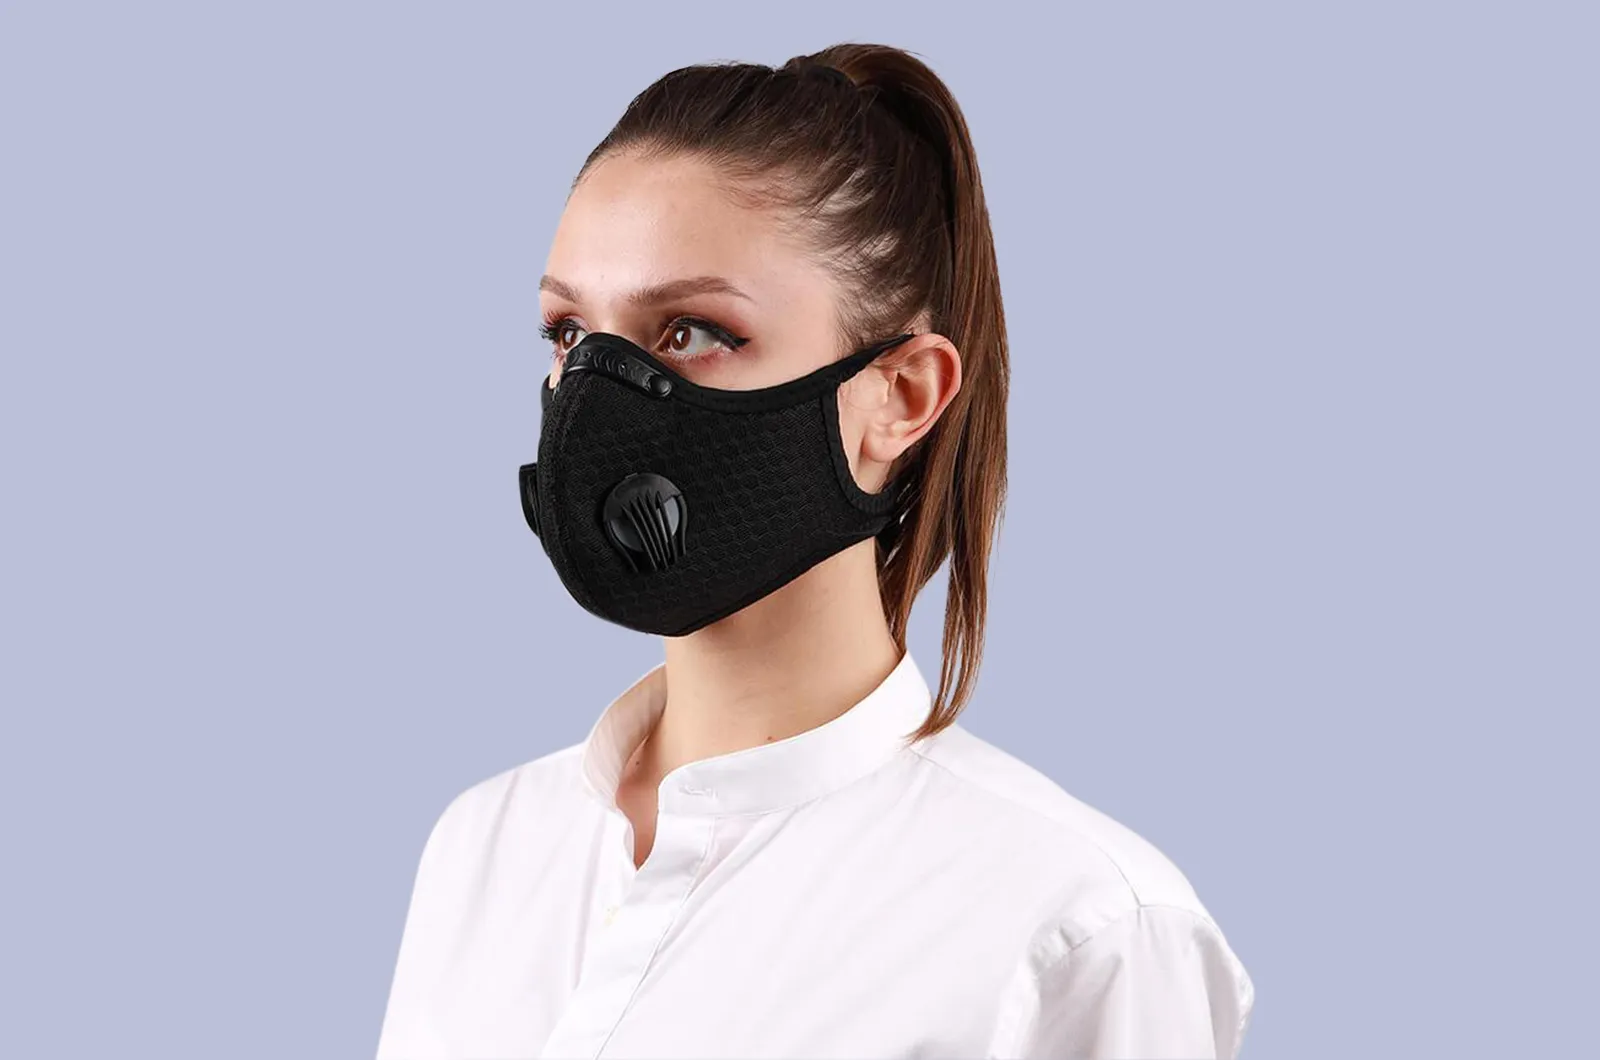 Best Face Mask for Coronavirus: Avoid COVID-19